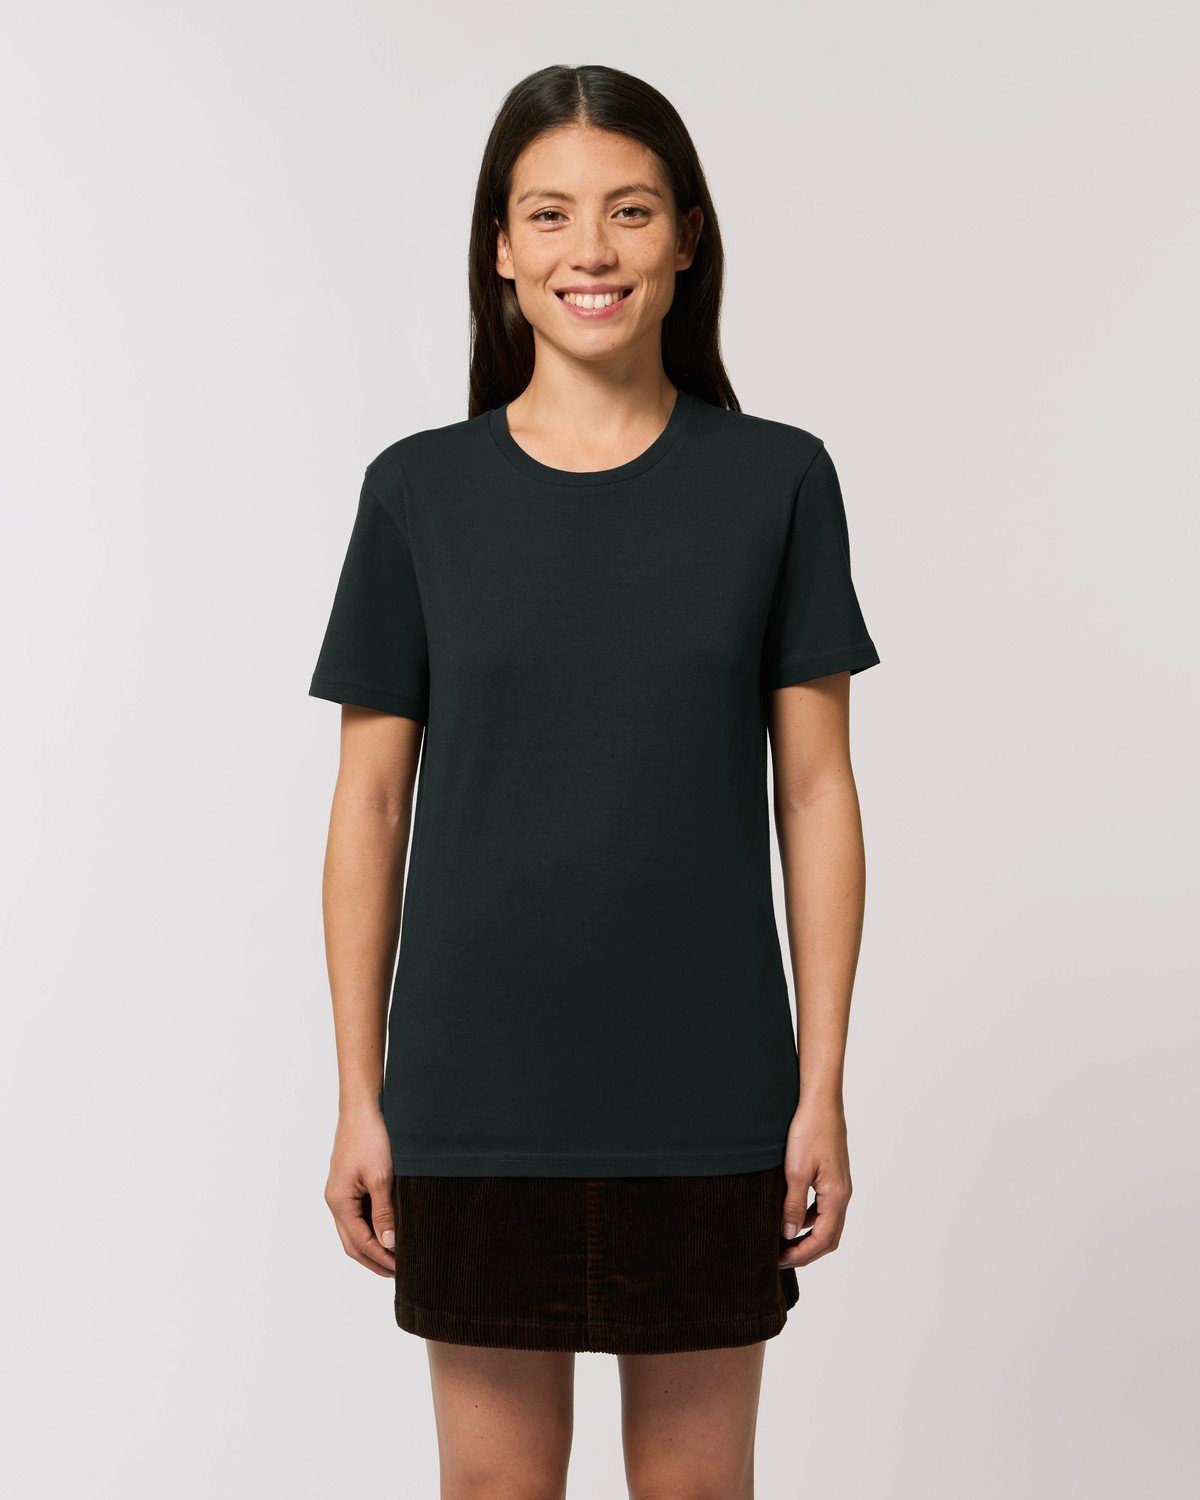 aus 100% Black T-Shirt Unisex T-Shirt Hilltop Hochwertiges Bio-Baumwolle